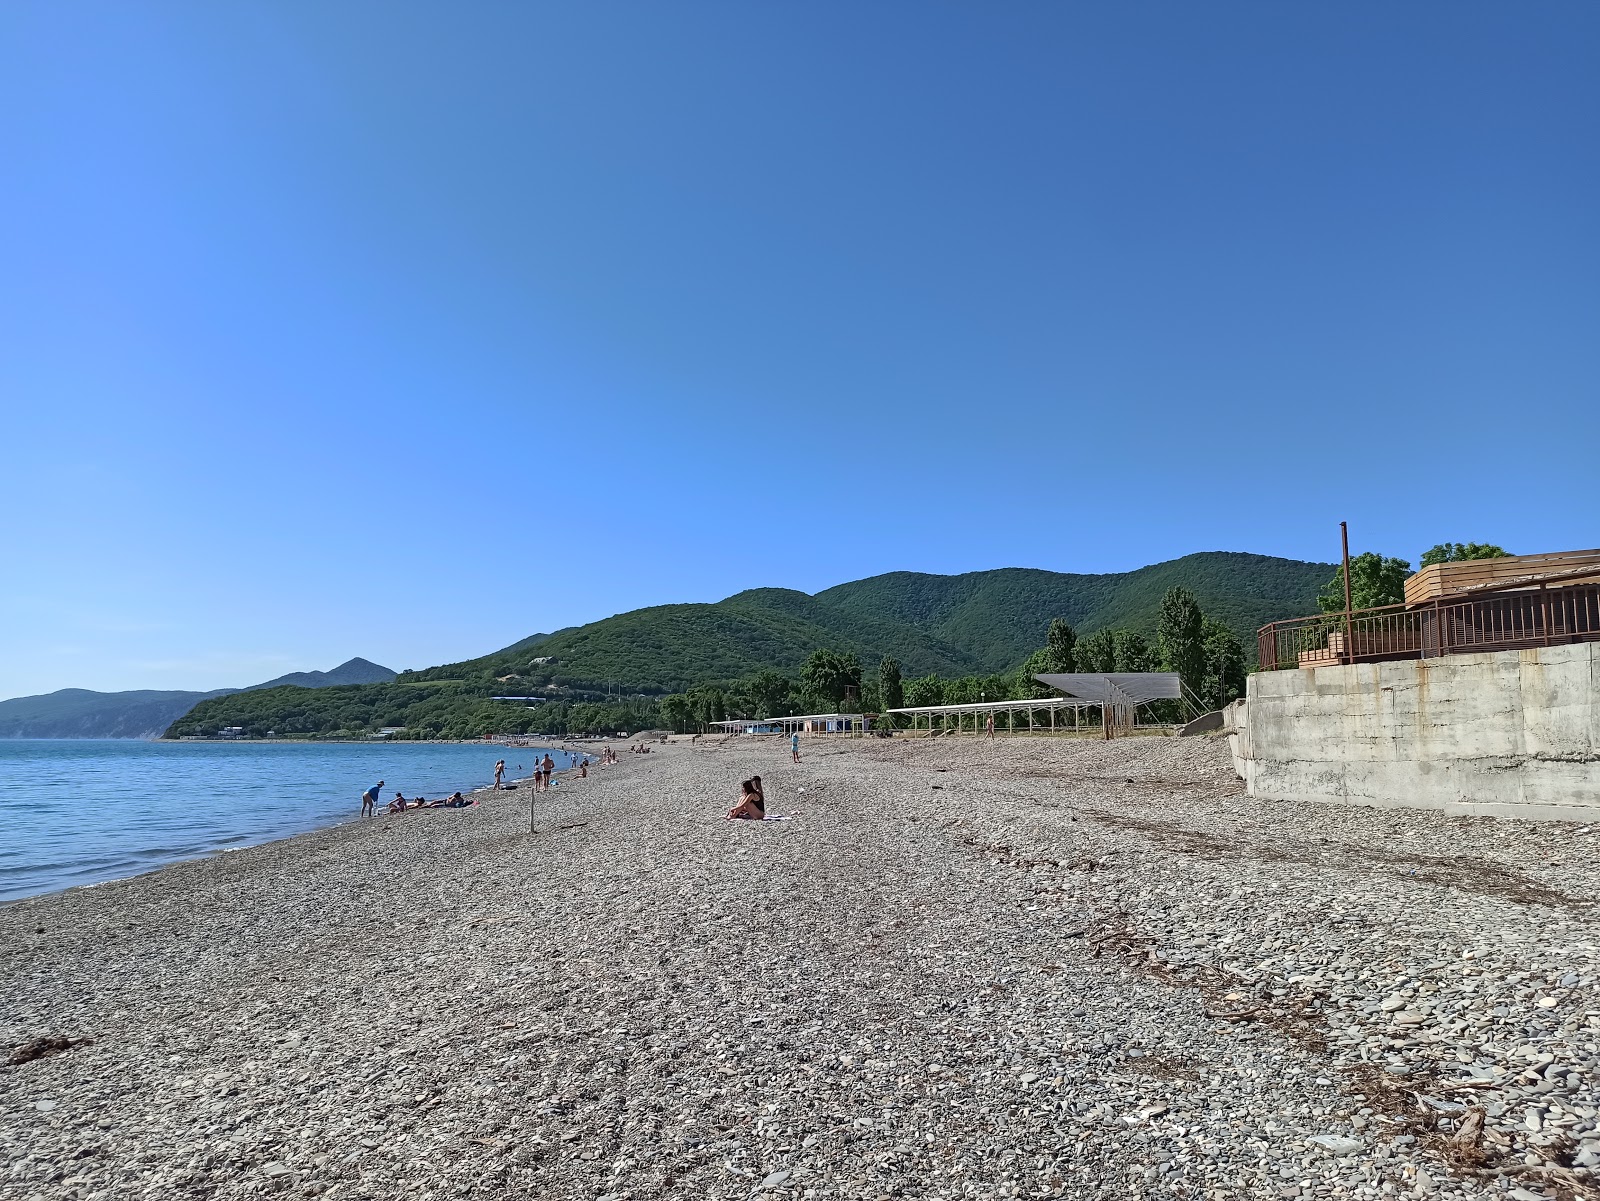 Krinitsa Plajı'in fotoğrafı hafif çakıl yüzey ile